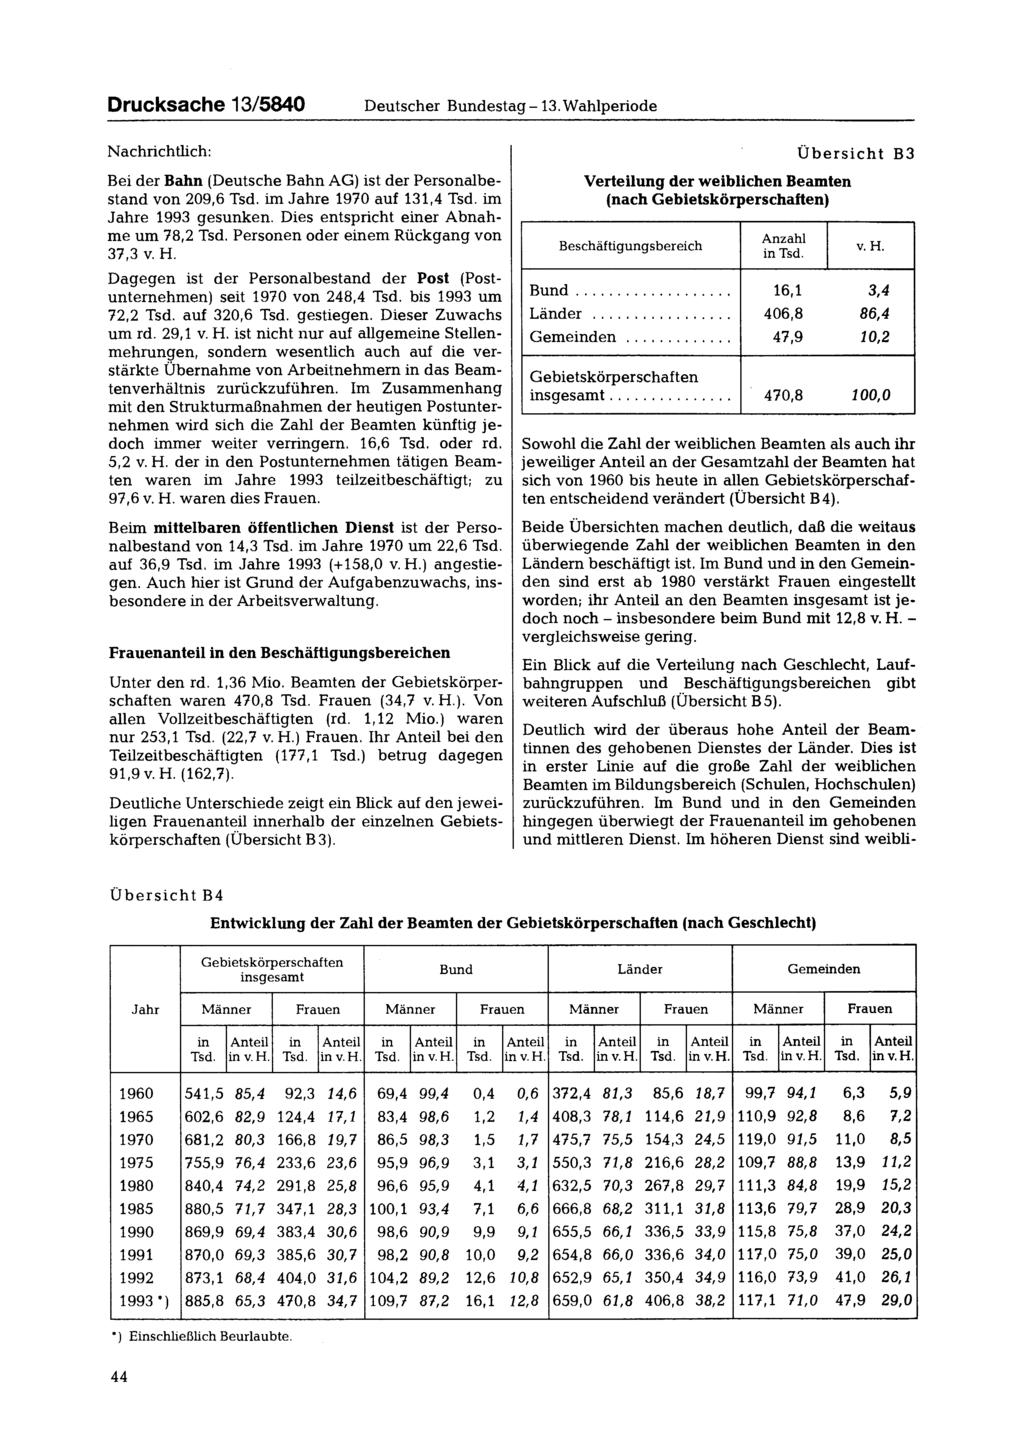 Drucksache 13/5840 Deutscher Bundestag - 13. Wahlperiode Nachrichtlich: Bei der Bahn (Deutsche Bahn AG) ist der Personalbestand von 209,6 Tsd. im Jahre 1970 auf 131,4 Tsd. im Jahre 1993 gesunken.